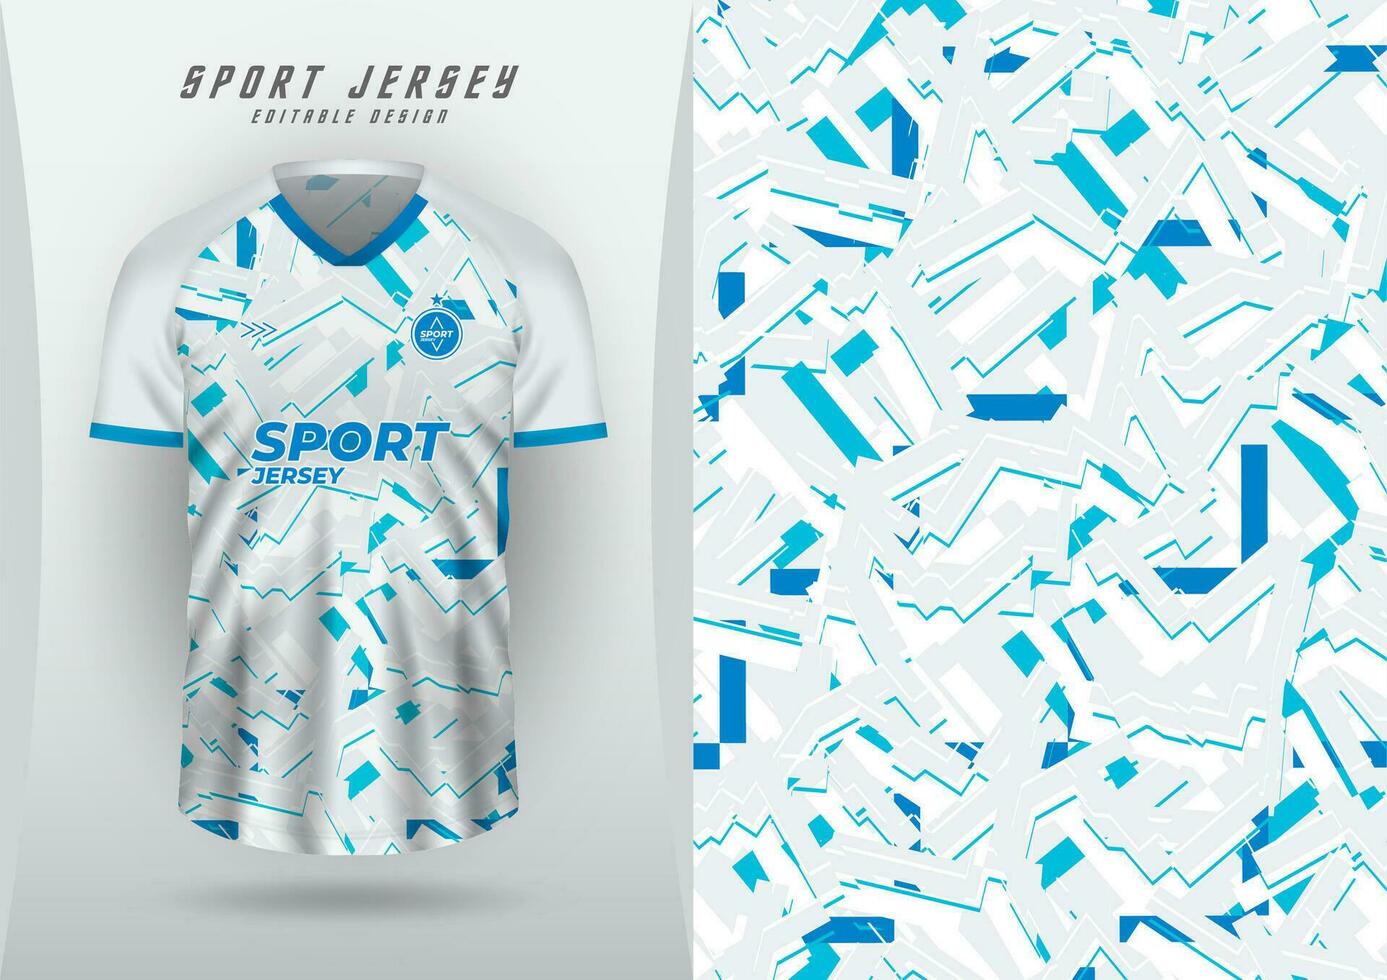 achtergrond voor sport, Jersey, Amerikaans voetbal, rennen Jersey, racing Jersey, wielersport, wit textuur, patroon, blauw veelhoekige grunge. en klein blauw lijnen vector